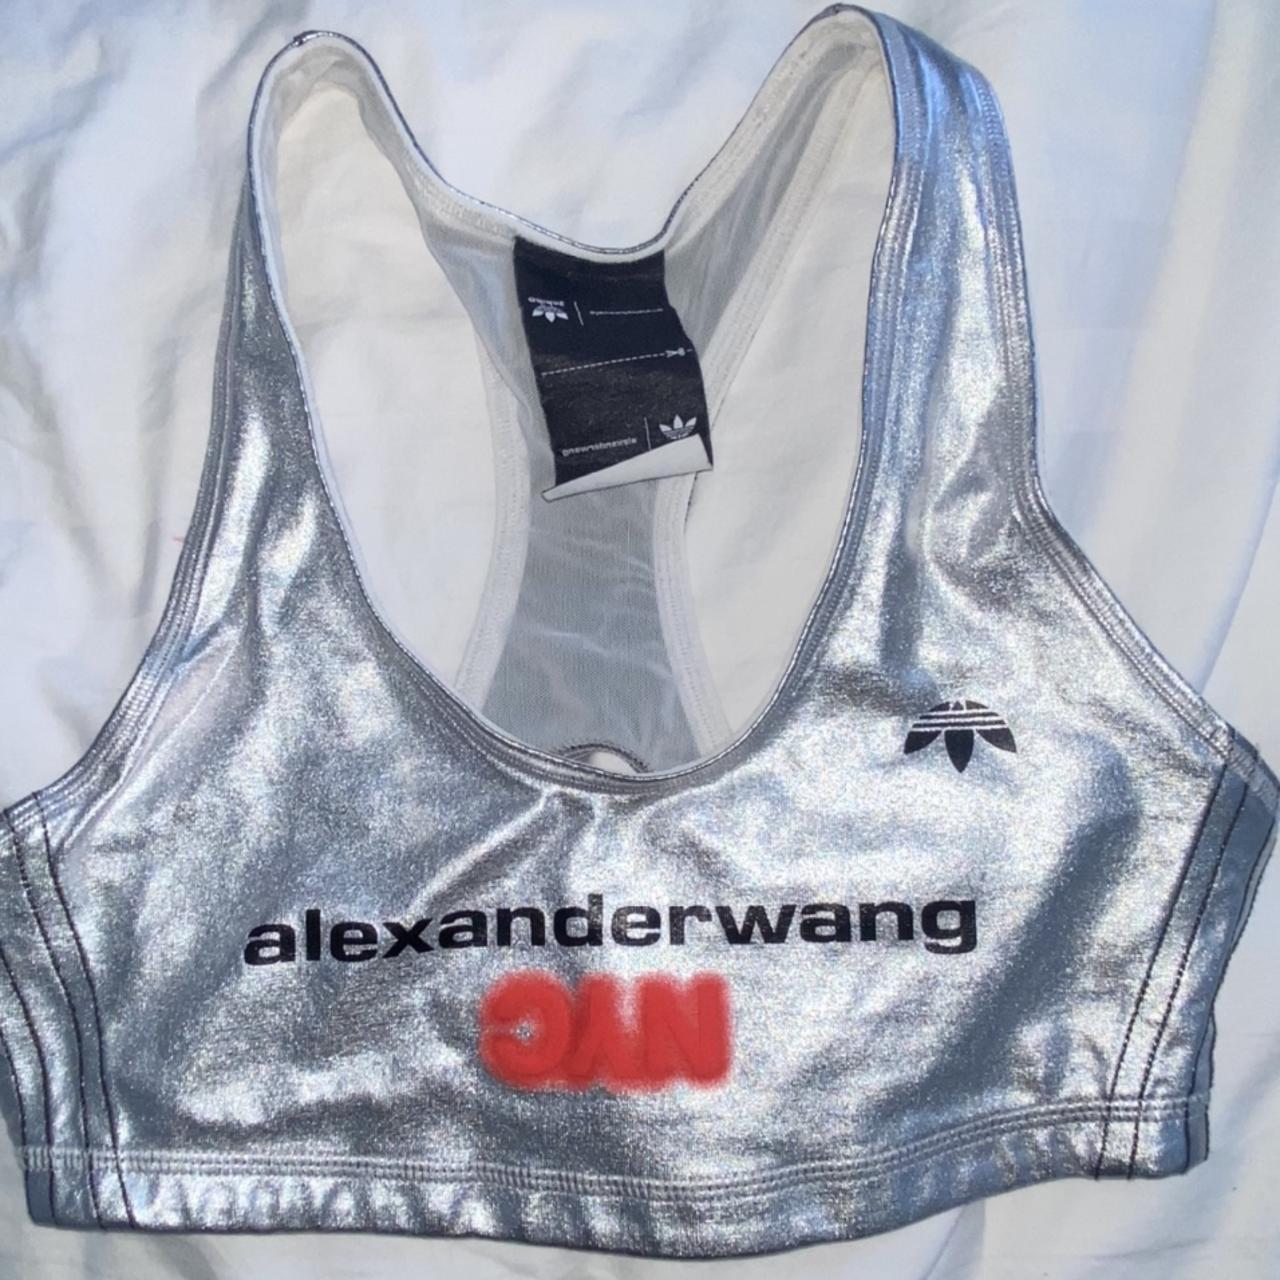 Alexander Wang gray sports bra size small never been - Depop